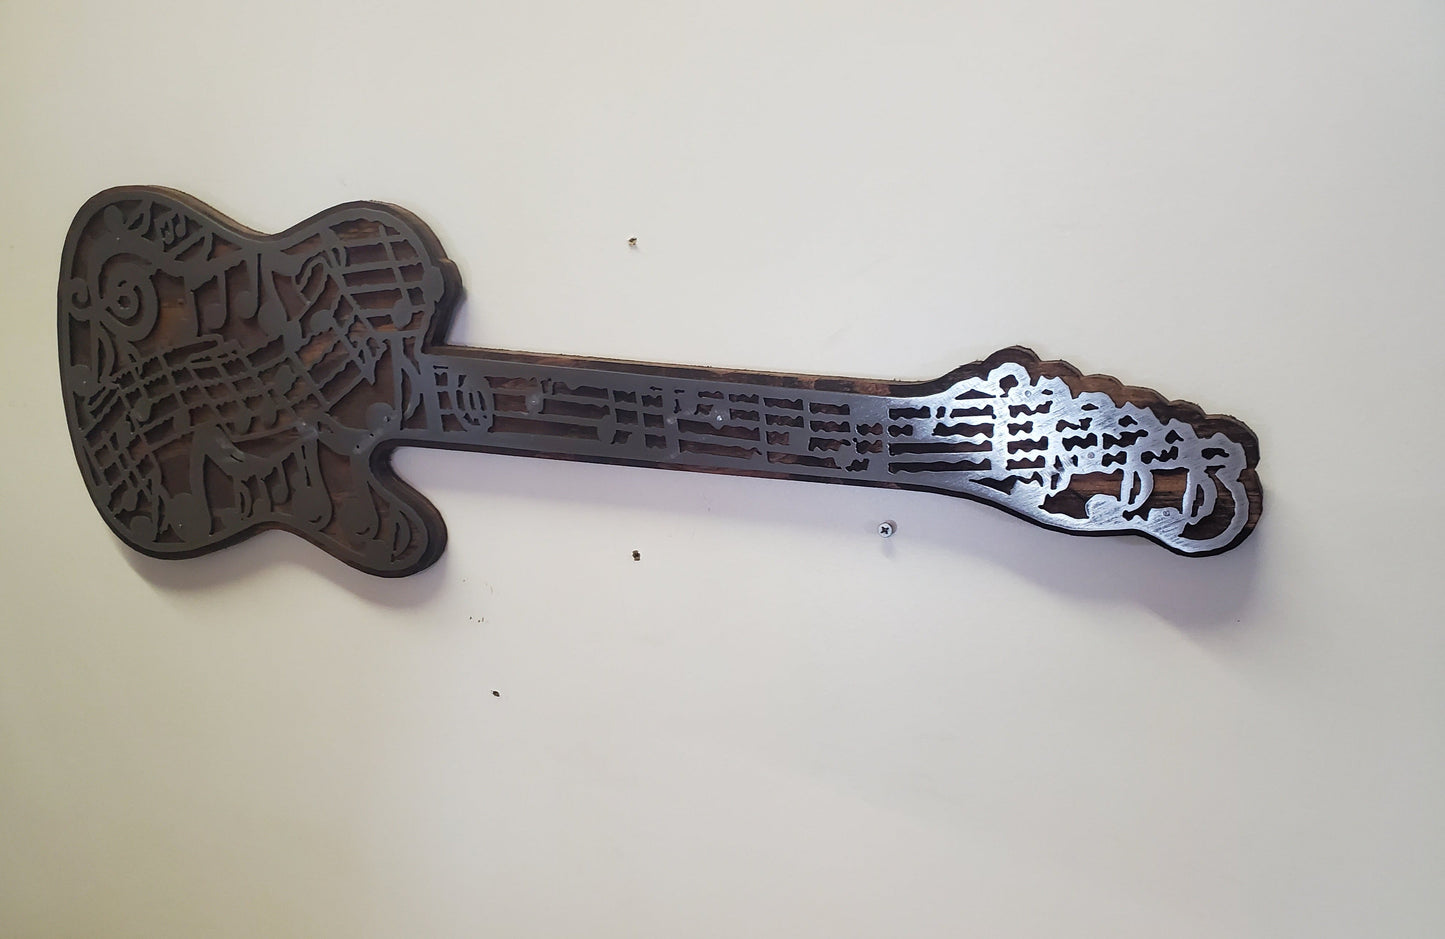 Musical Note Guitar Metal Art on Wood